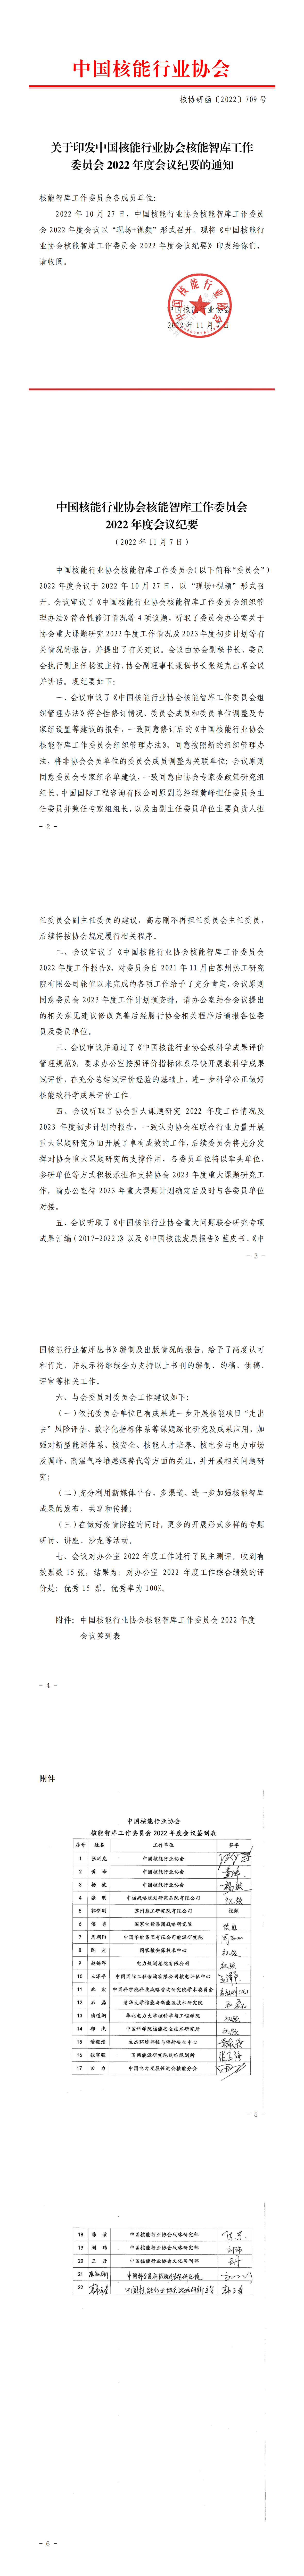 关于印发中国核能行业协会核能智库工作委员会2022年度会议纪要的通知_00.png